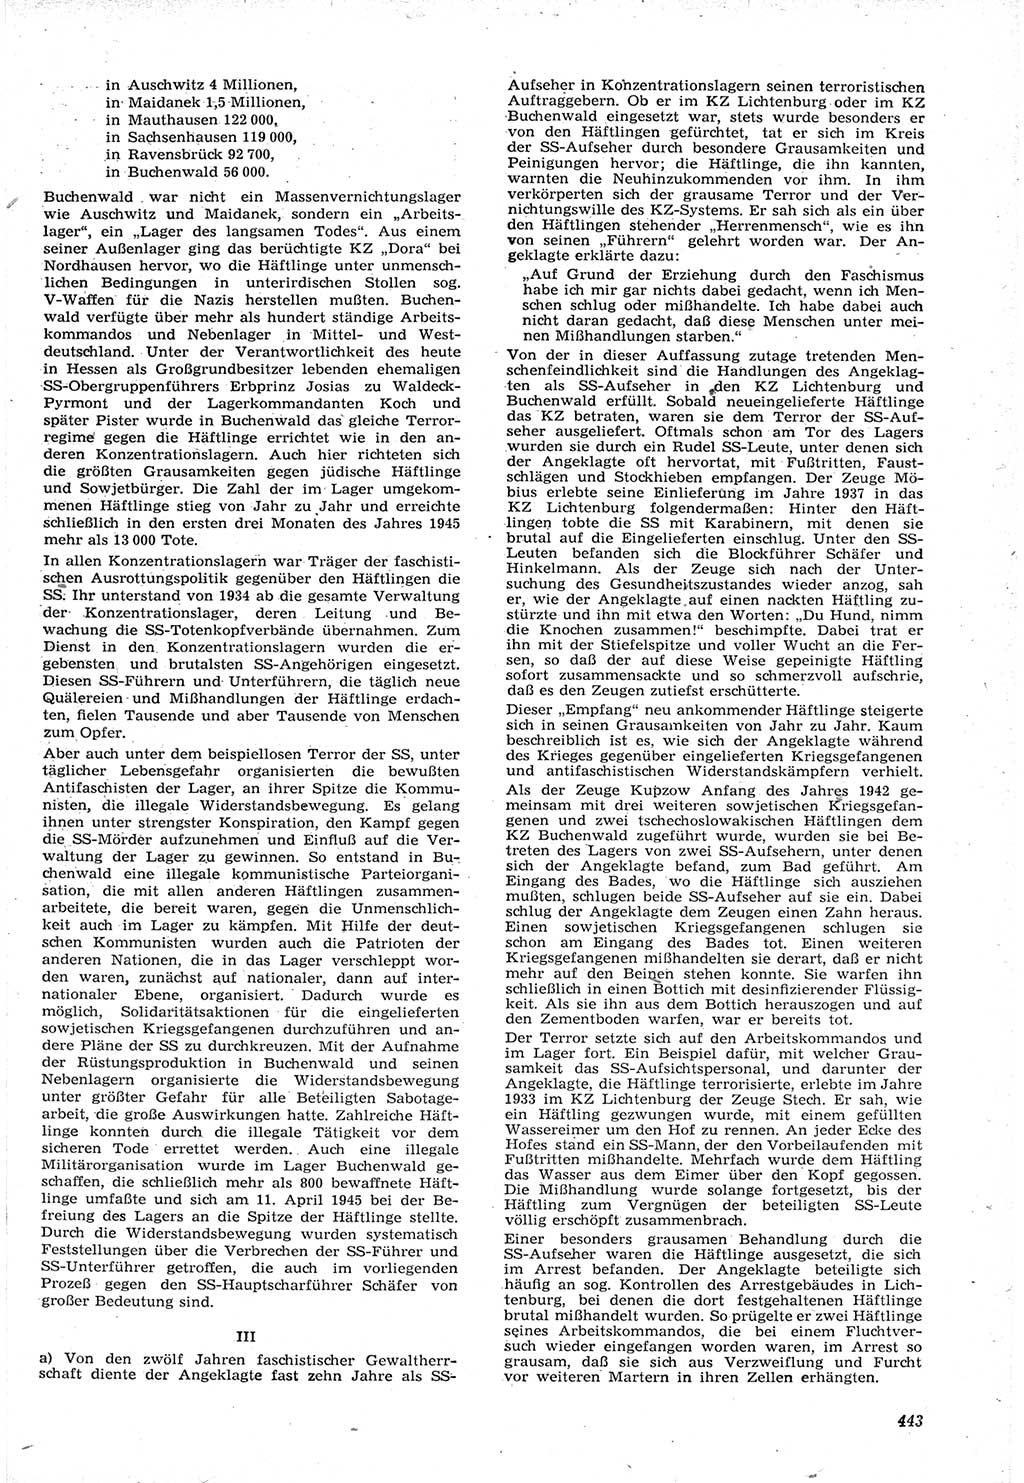 Neue Justiz (NJ), Zeitschrift für Recht und Rechtswissenschaft [Deutsche Demokratische Republik (DDR)], 15. Jahrgang 1961, Seite 443 (NJ DDR 1961, S. 443)